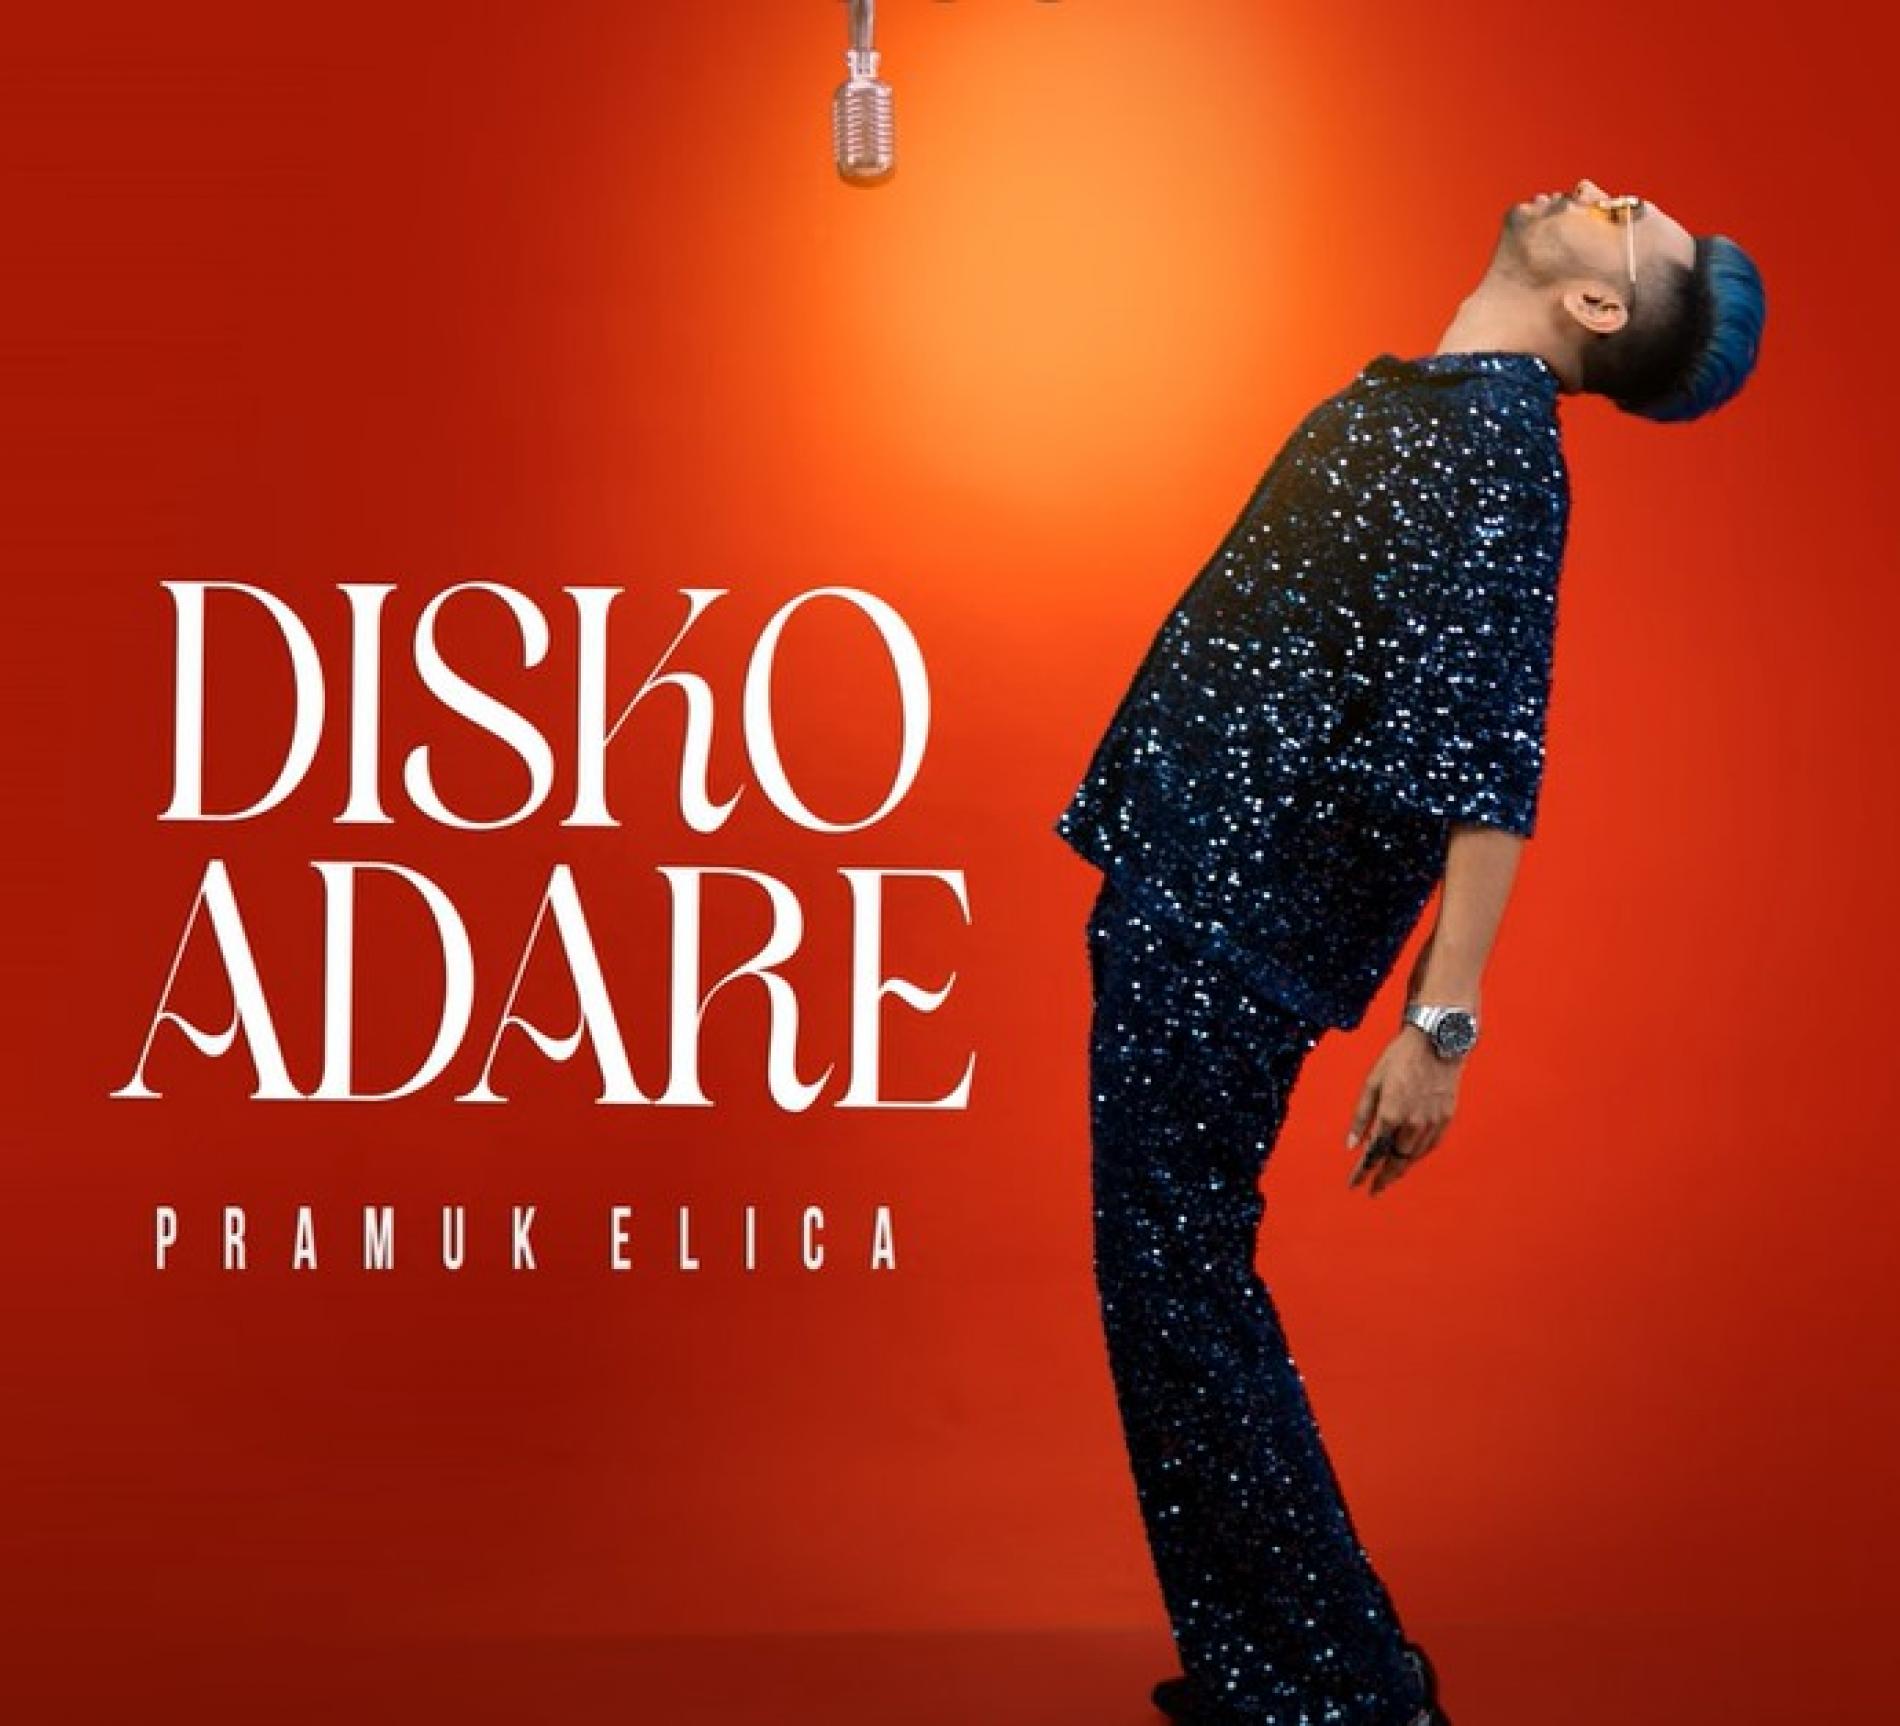 New Music : Pramuk Elica – Disko Adare